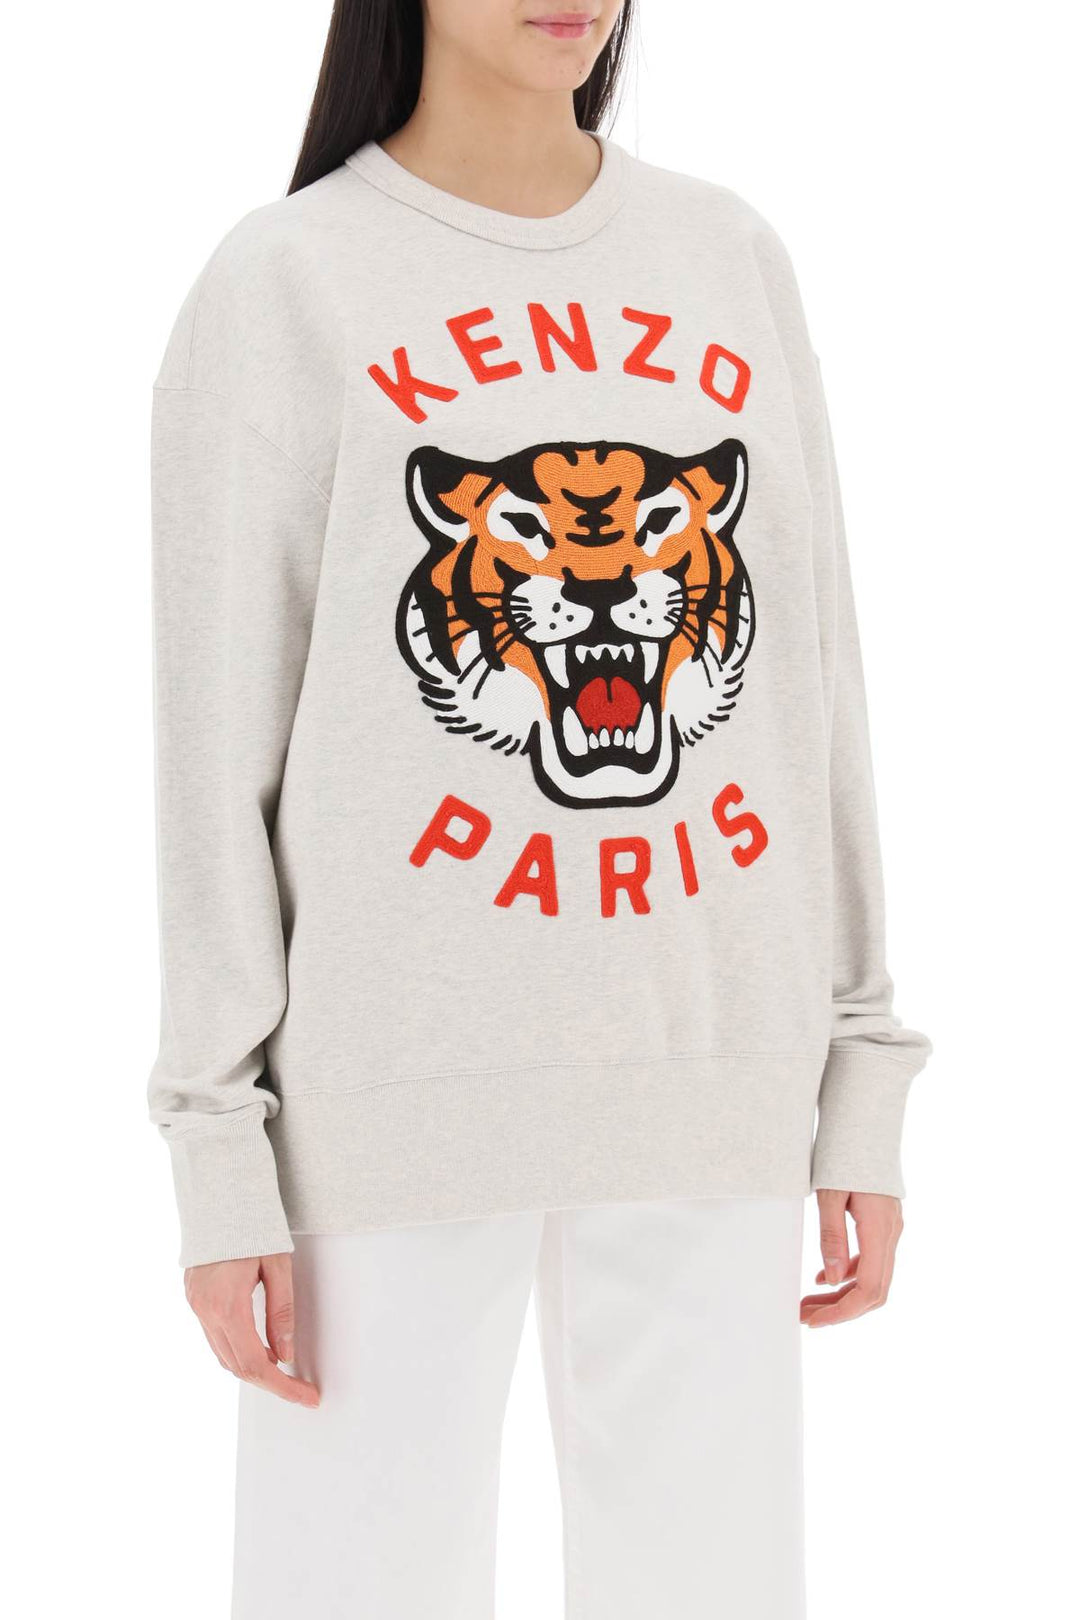 Kenzo 'Lucky Tiger' Oversized Sweatshirt   Grey